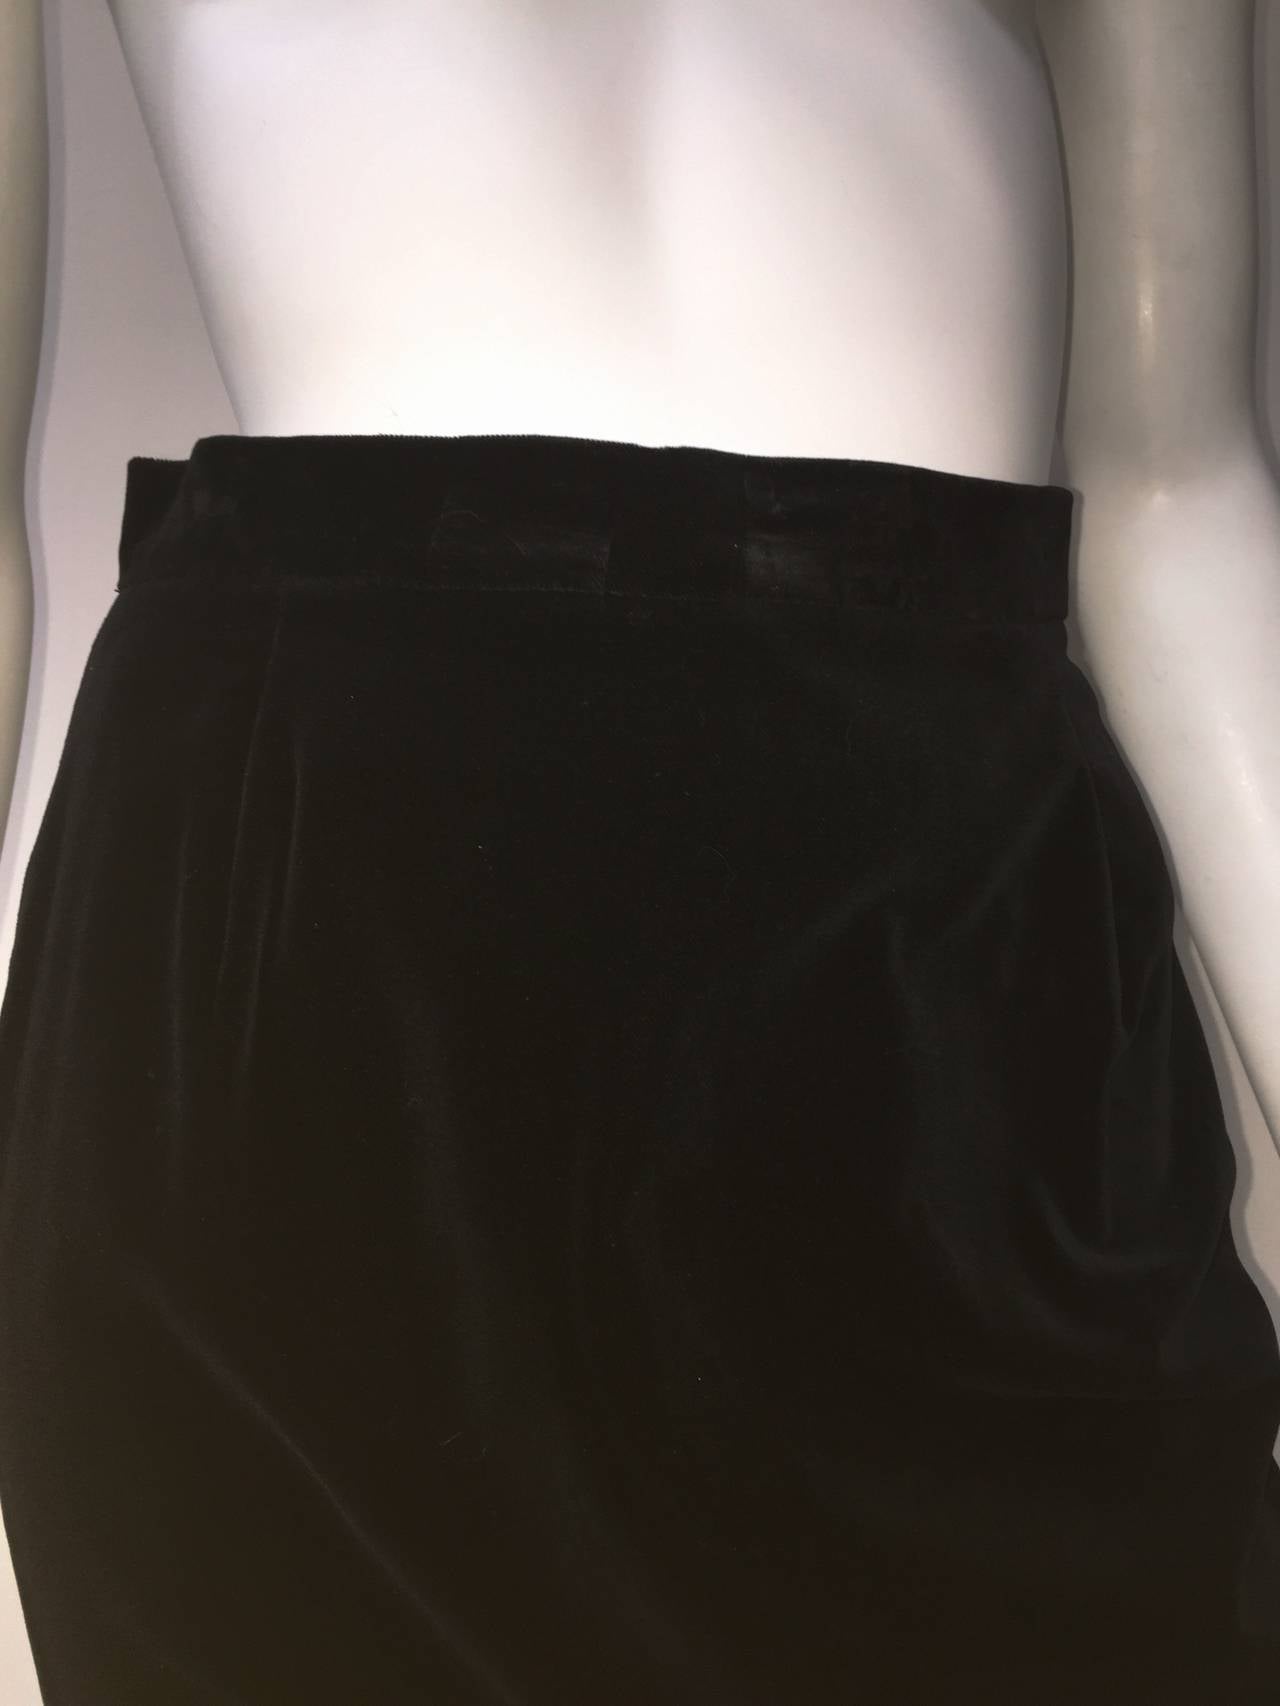 Women's Caroline Charles London for Neiman Marcus 1980s Long Black Velvet Skirt Size 4.